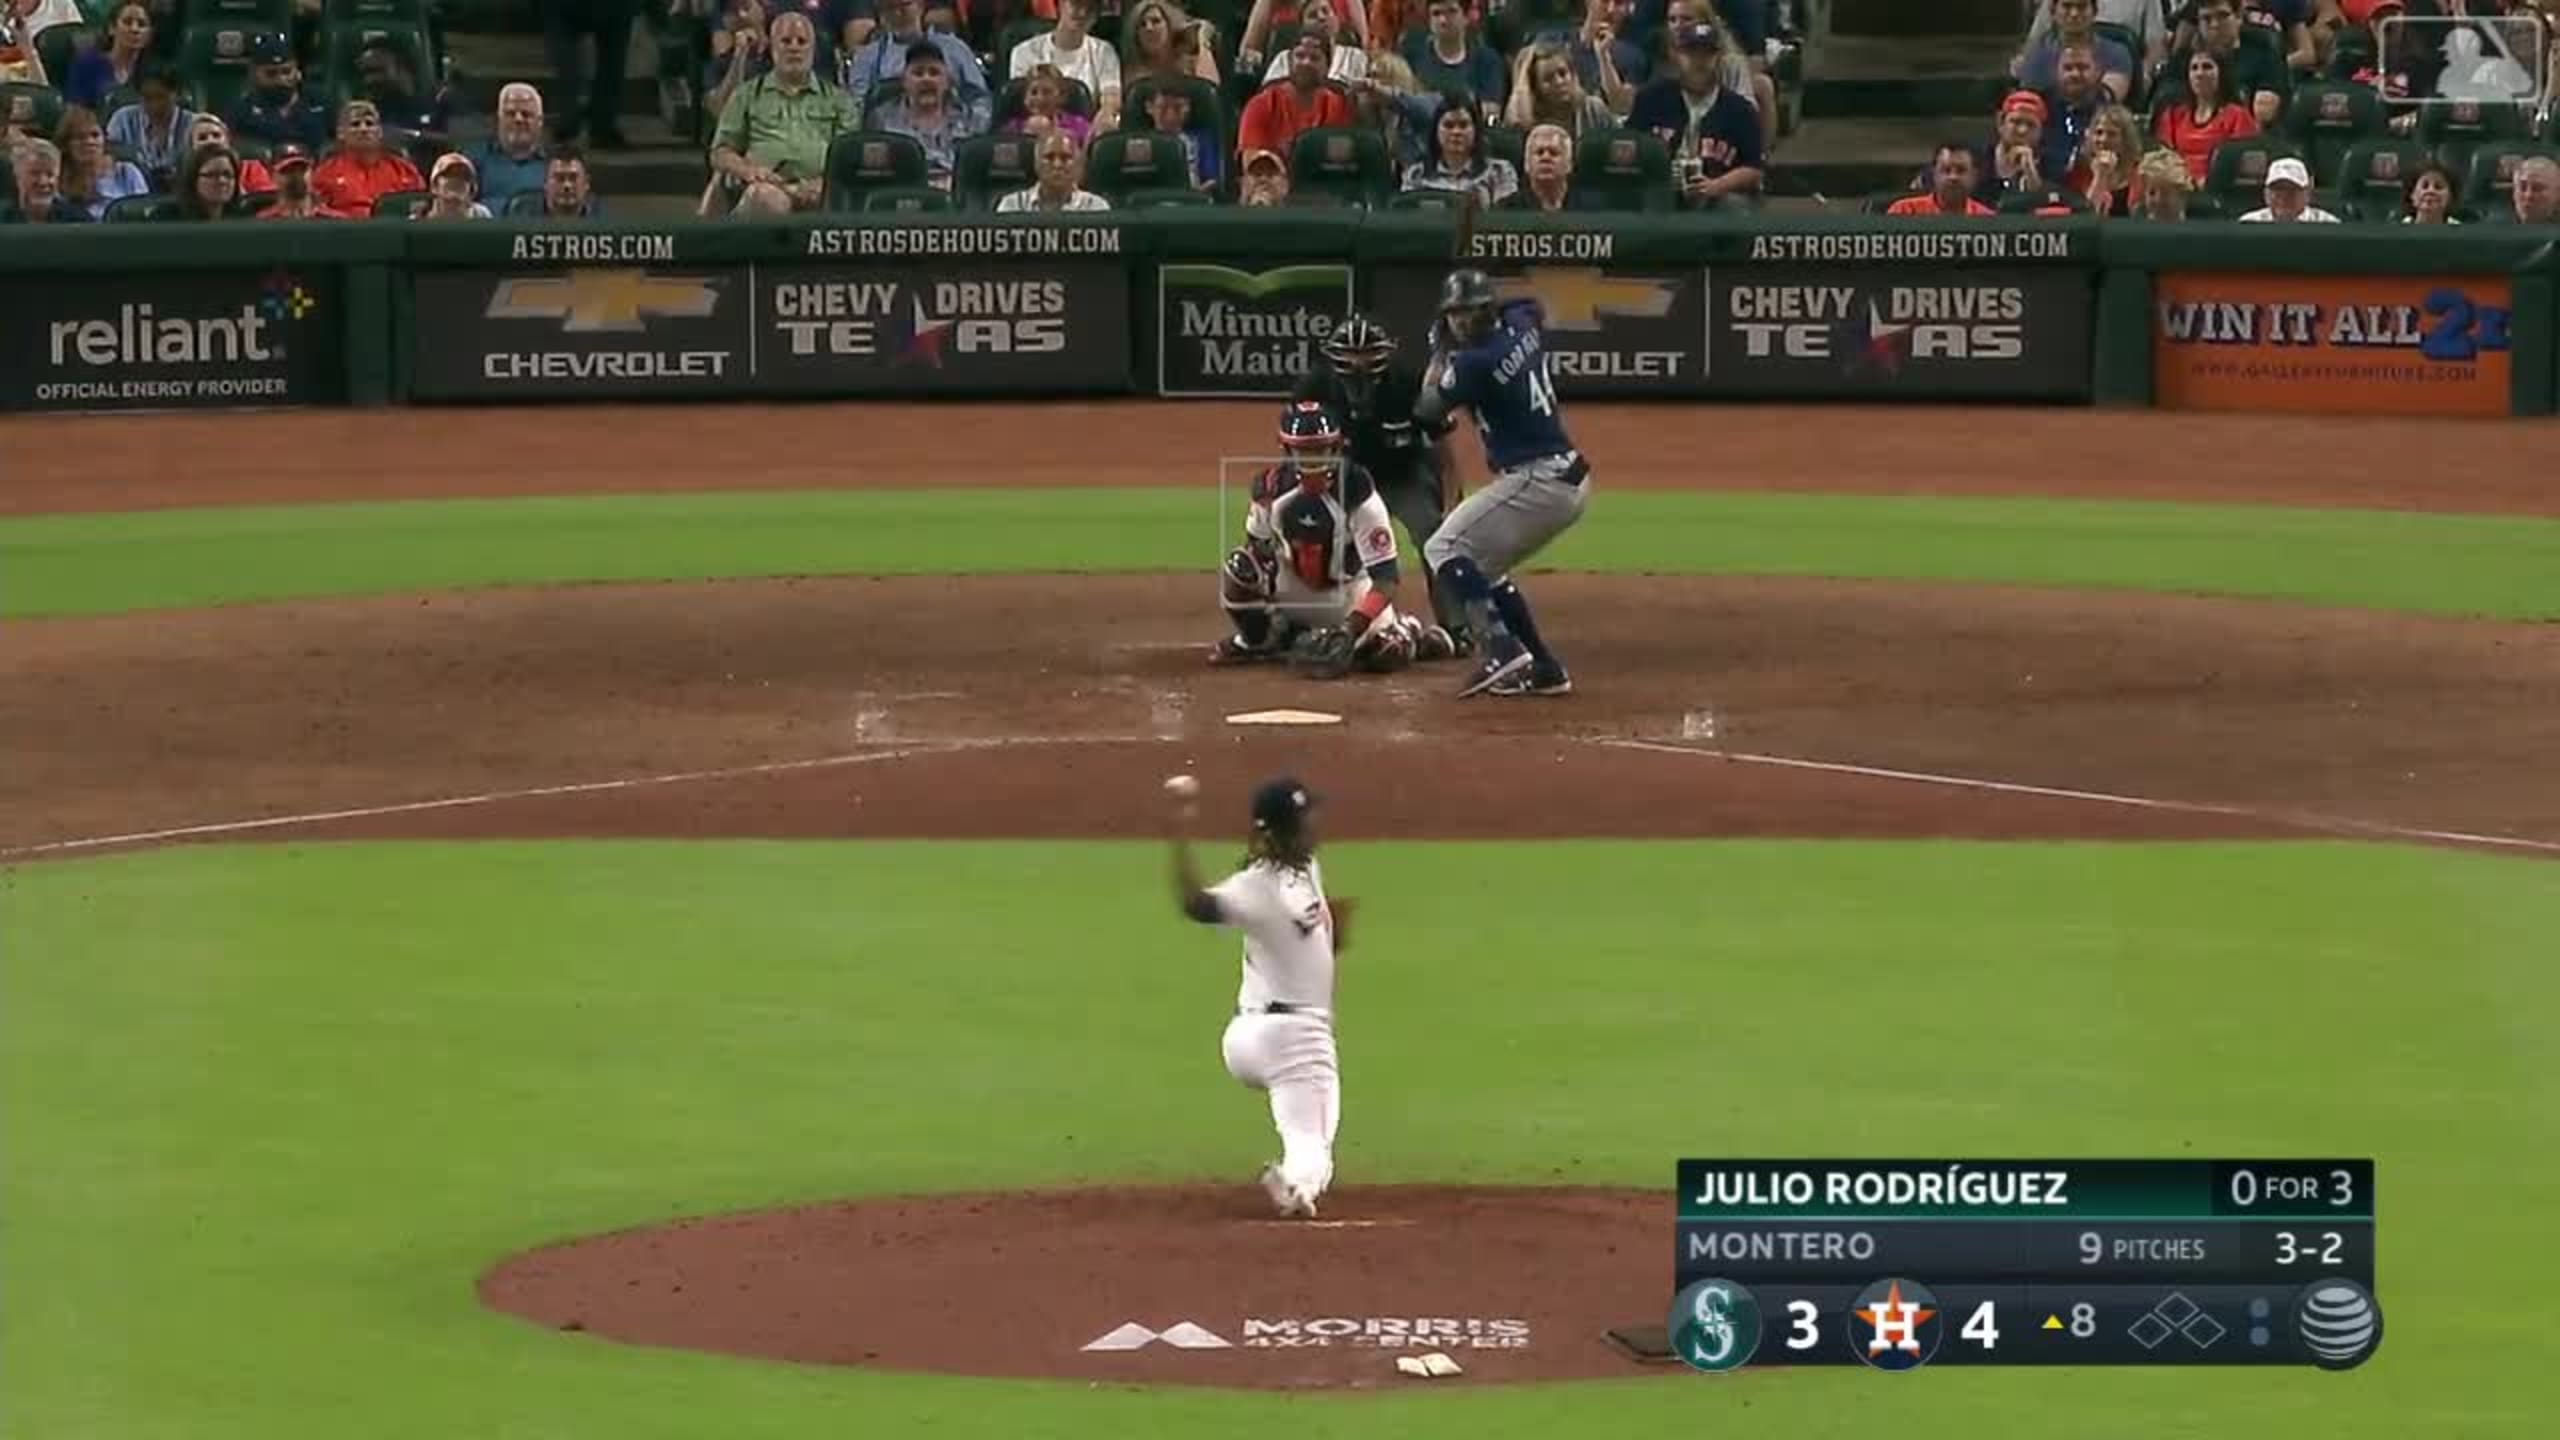 M's Julio Rodríguez scratched vs Astros with sore left wrist